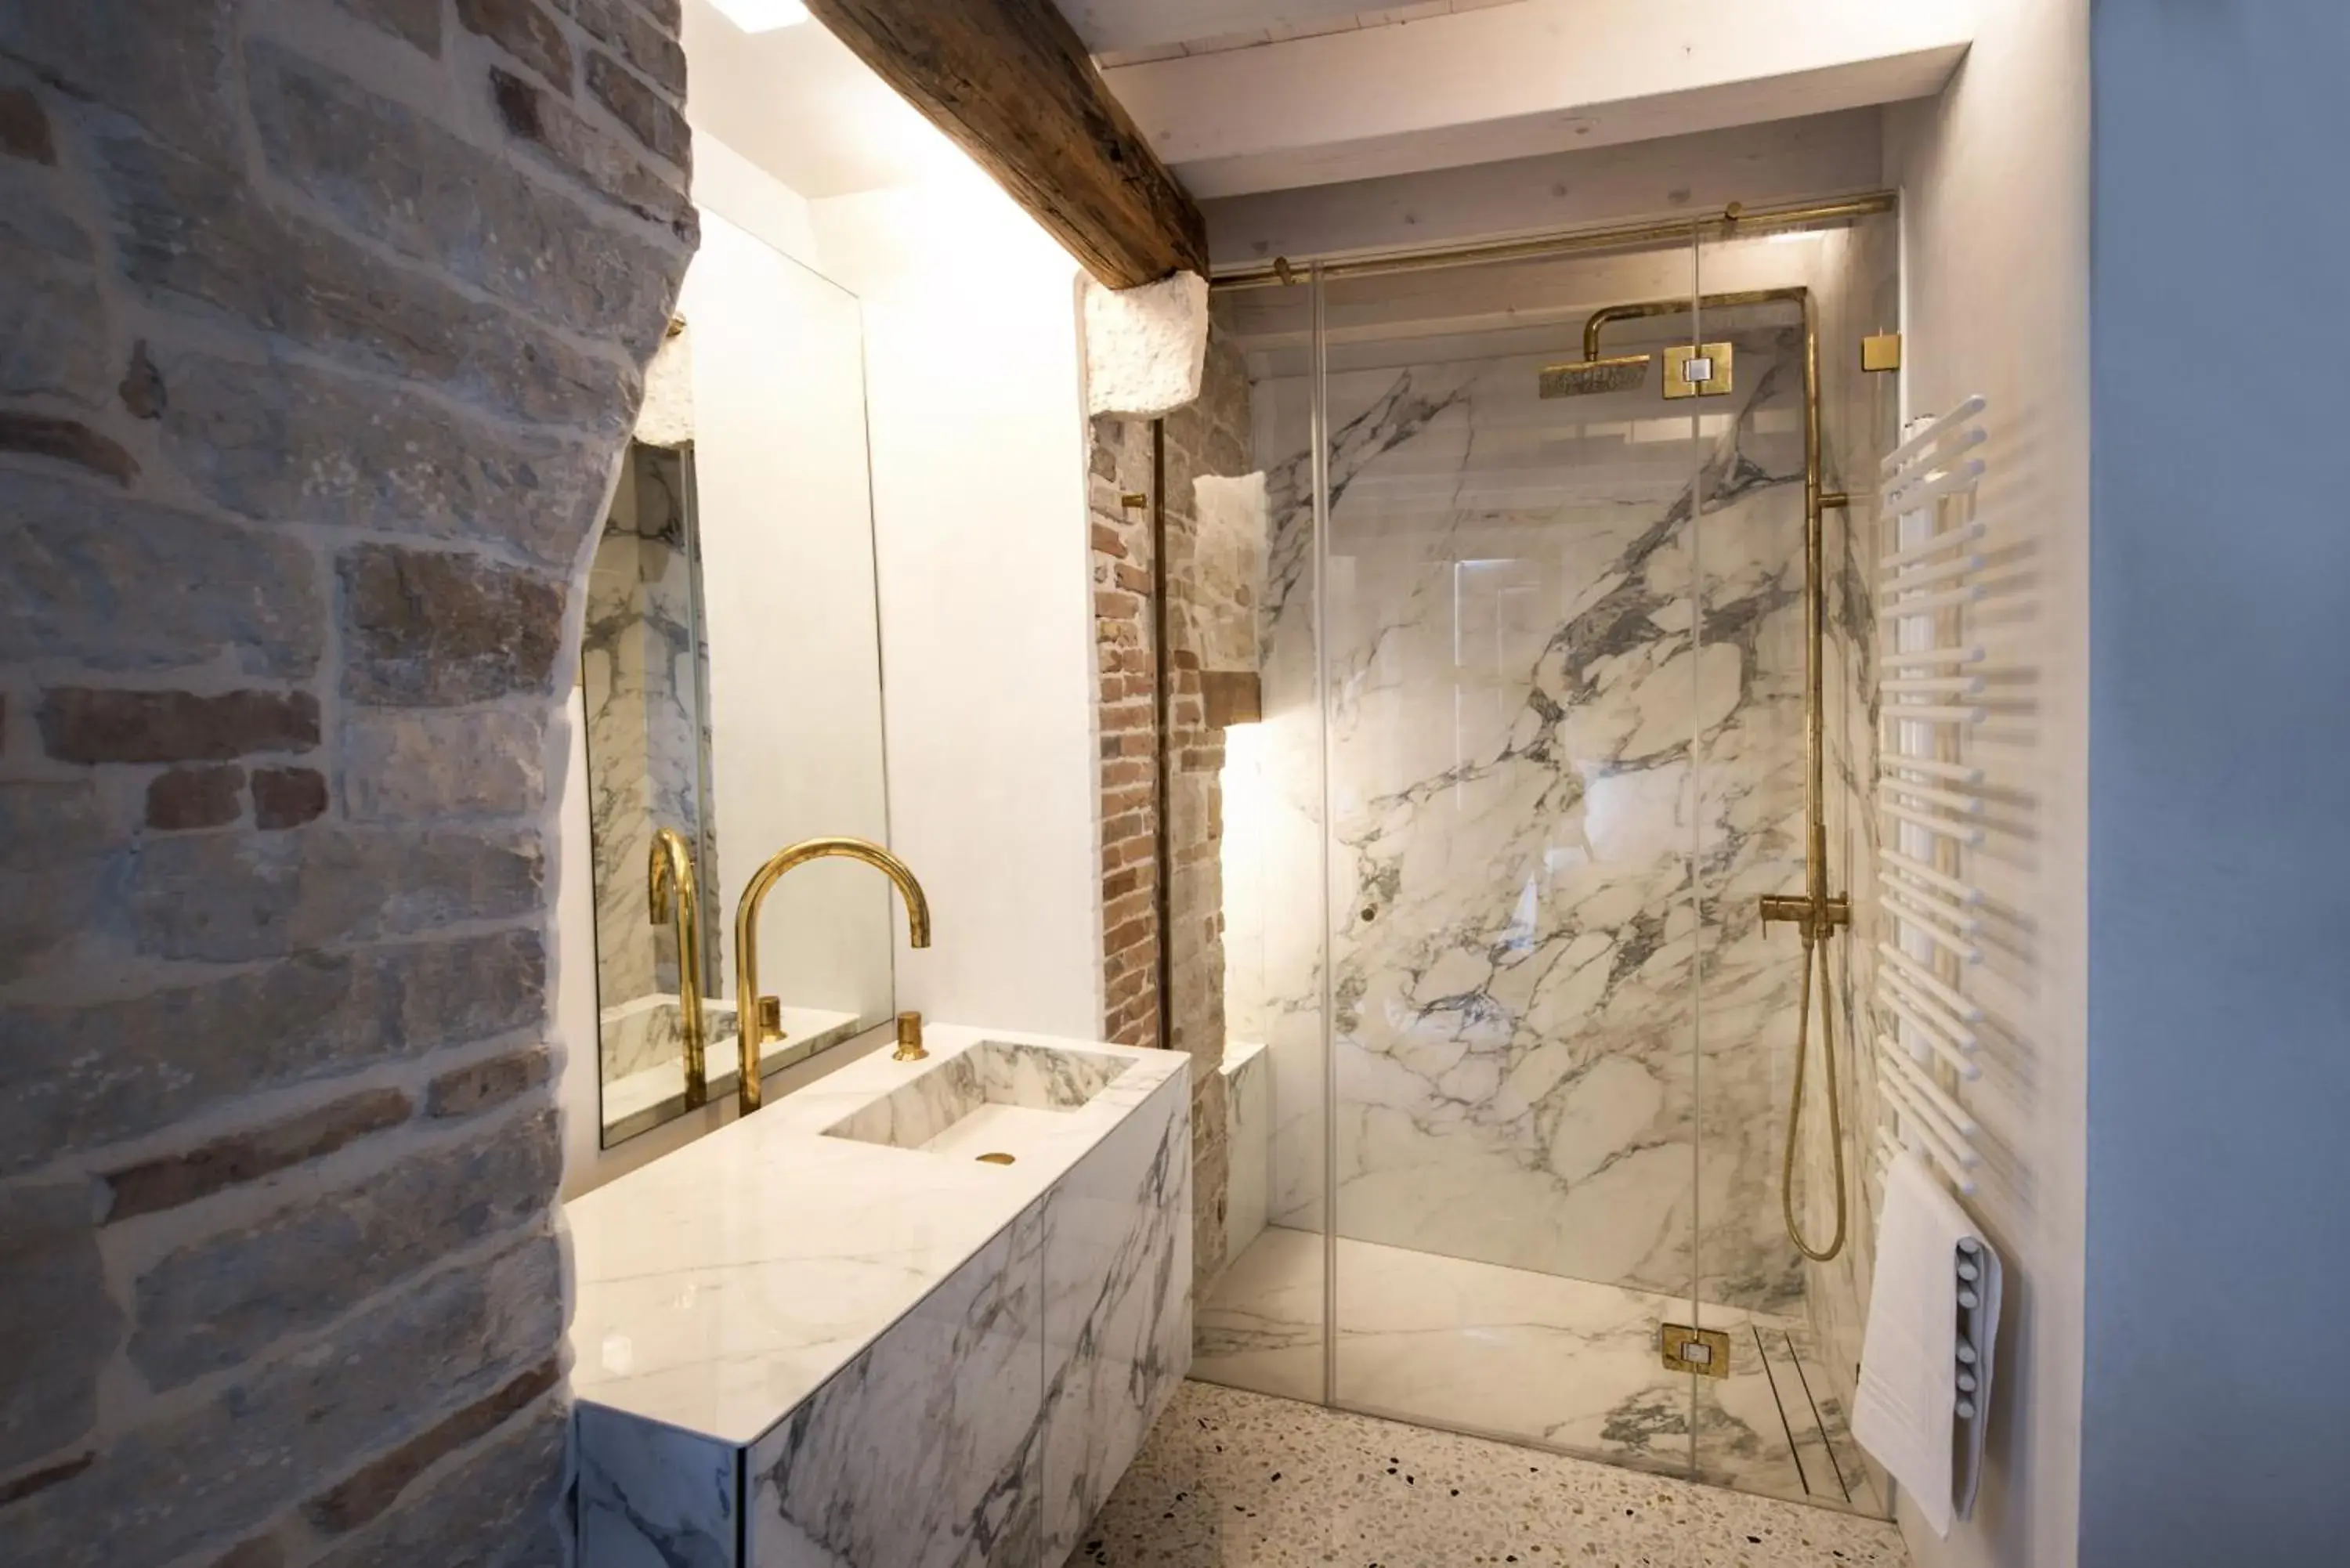 Shower, Bathroom in Spirito Santo Palazzo Storico